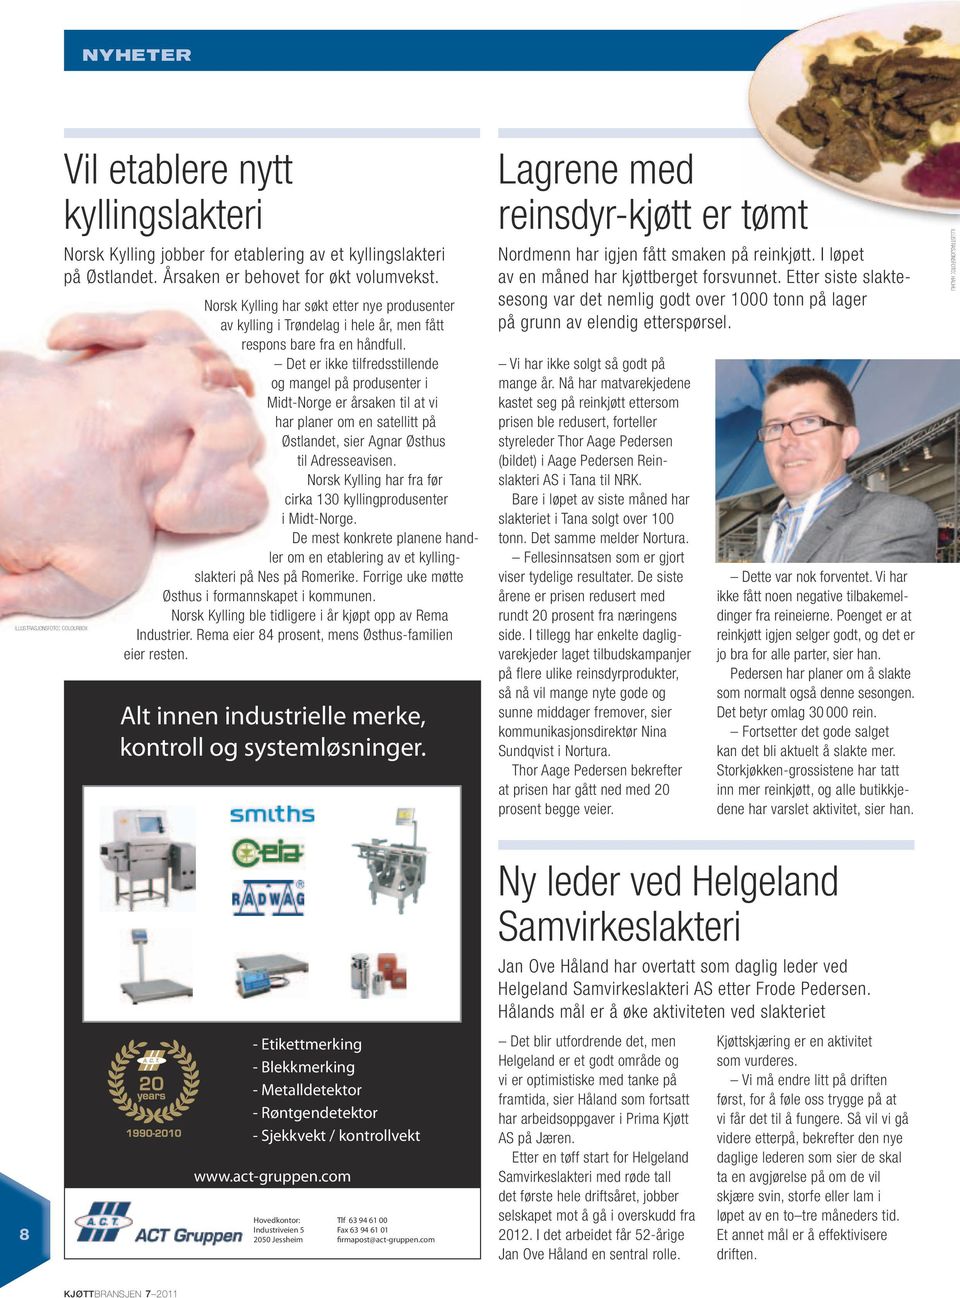 Det er ikke tilfredsstillende og mangel på produsenter i Midt-Norge er årsaken til at vi har planer om en satellitt på Østlandet, sier Agnar Østhus til Adresseavisen.